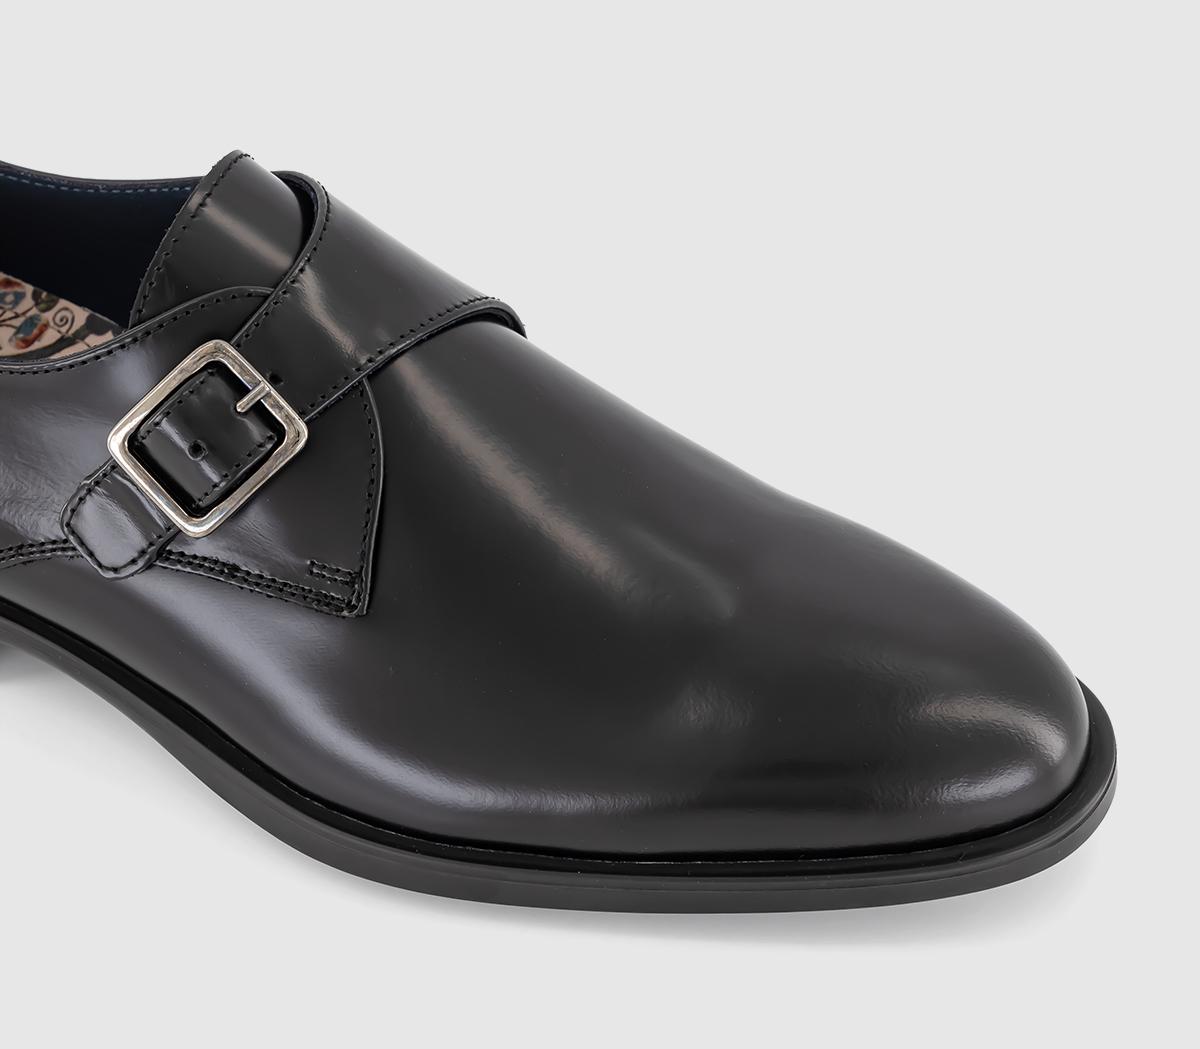 Poste Pierre Single Strap Monk Shoes Black Leather - Men’s Smart Shoes